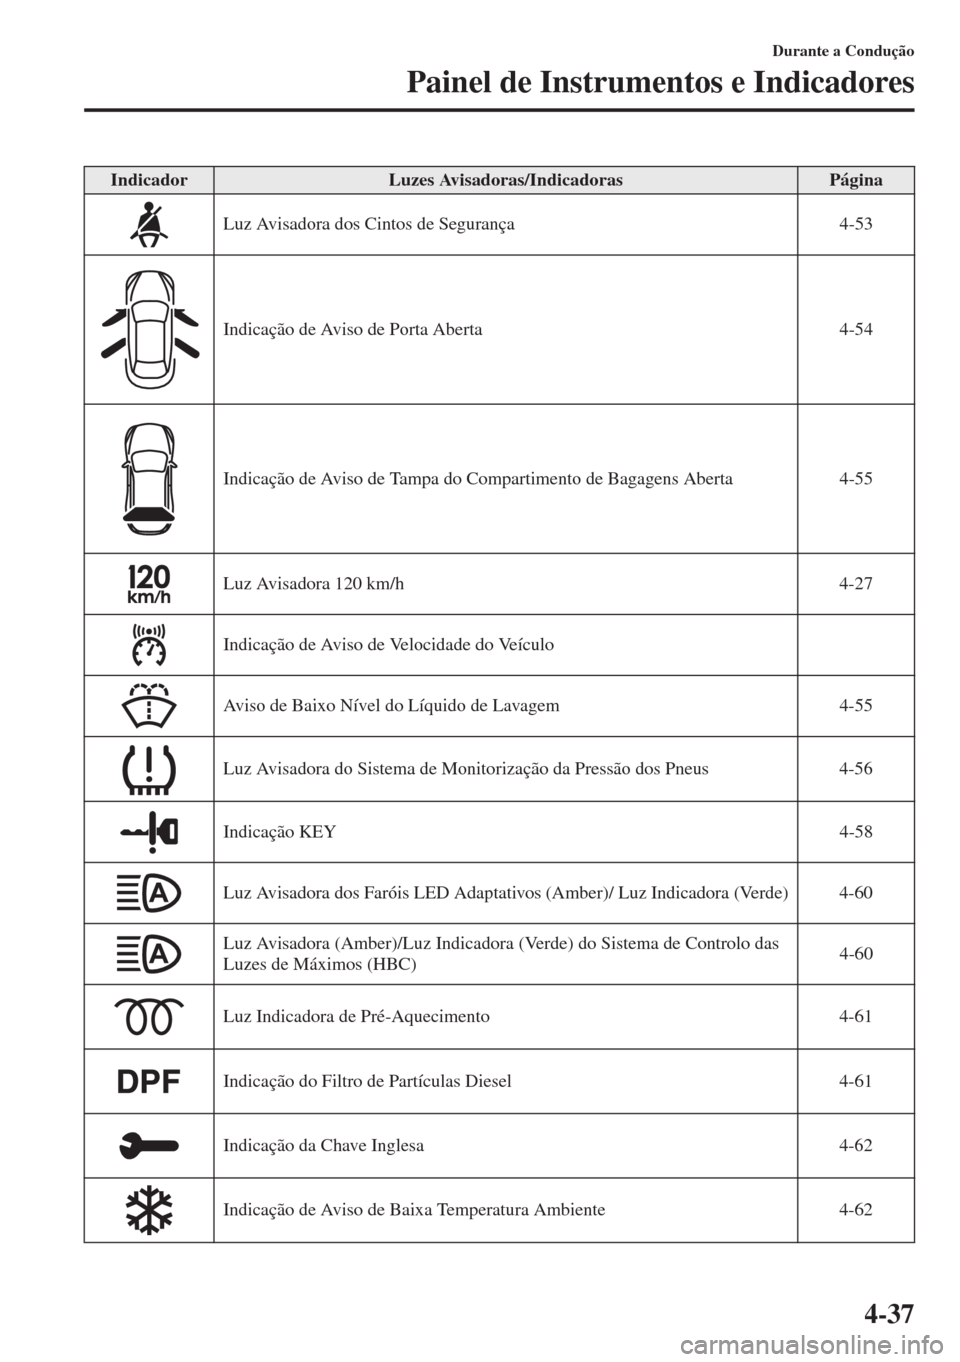 MAZDA MODEL CX-5 2015  Manual do proprietário (in Portuguese) 4-37
Durante a Condução
Painel de Instrumentos e Indicadores
IndicadorLuzes Avisadoras/IndicadorasPágina
Luz Avisadora dos Cintos de Segurança 4-53
Indicação de Aviso de Porta Aberta 4-54
Indica